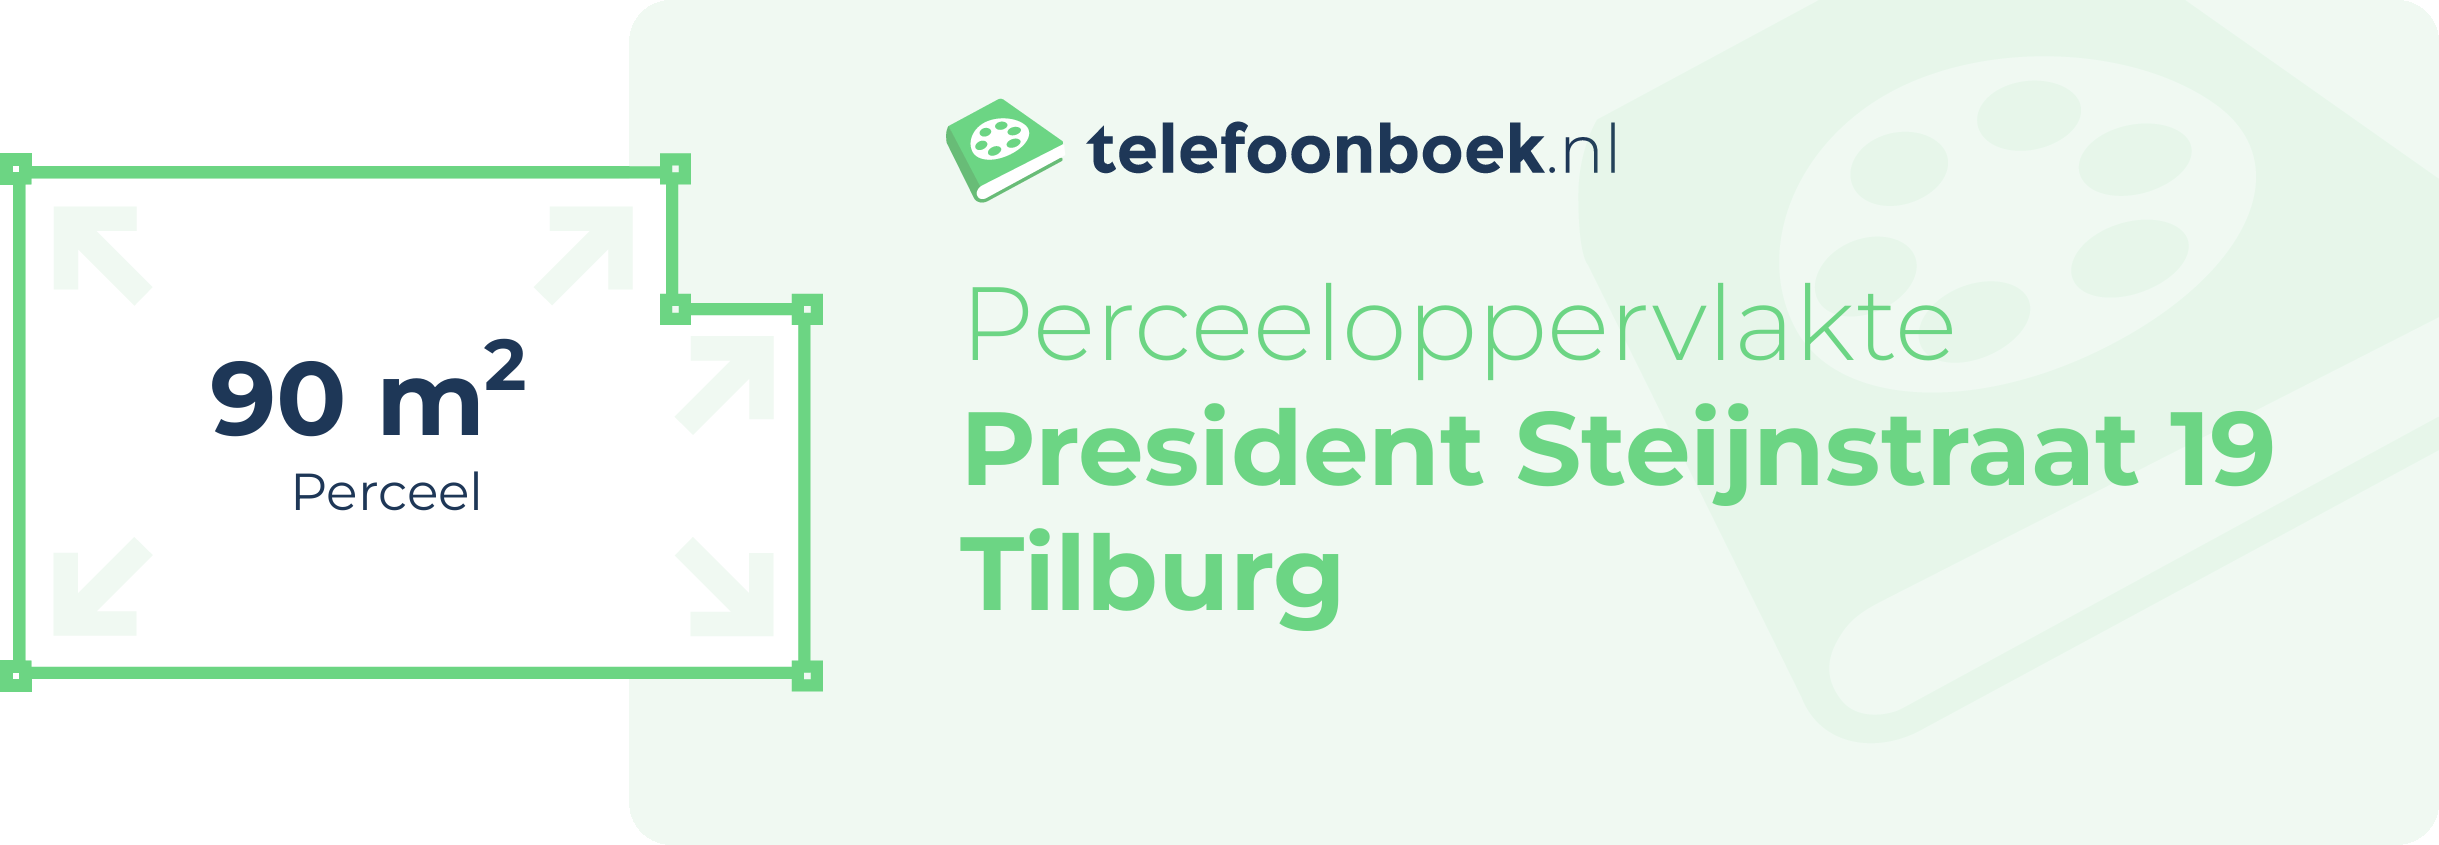 Perceeloppervlakte President Steijnstraat 19 Tilburg